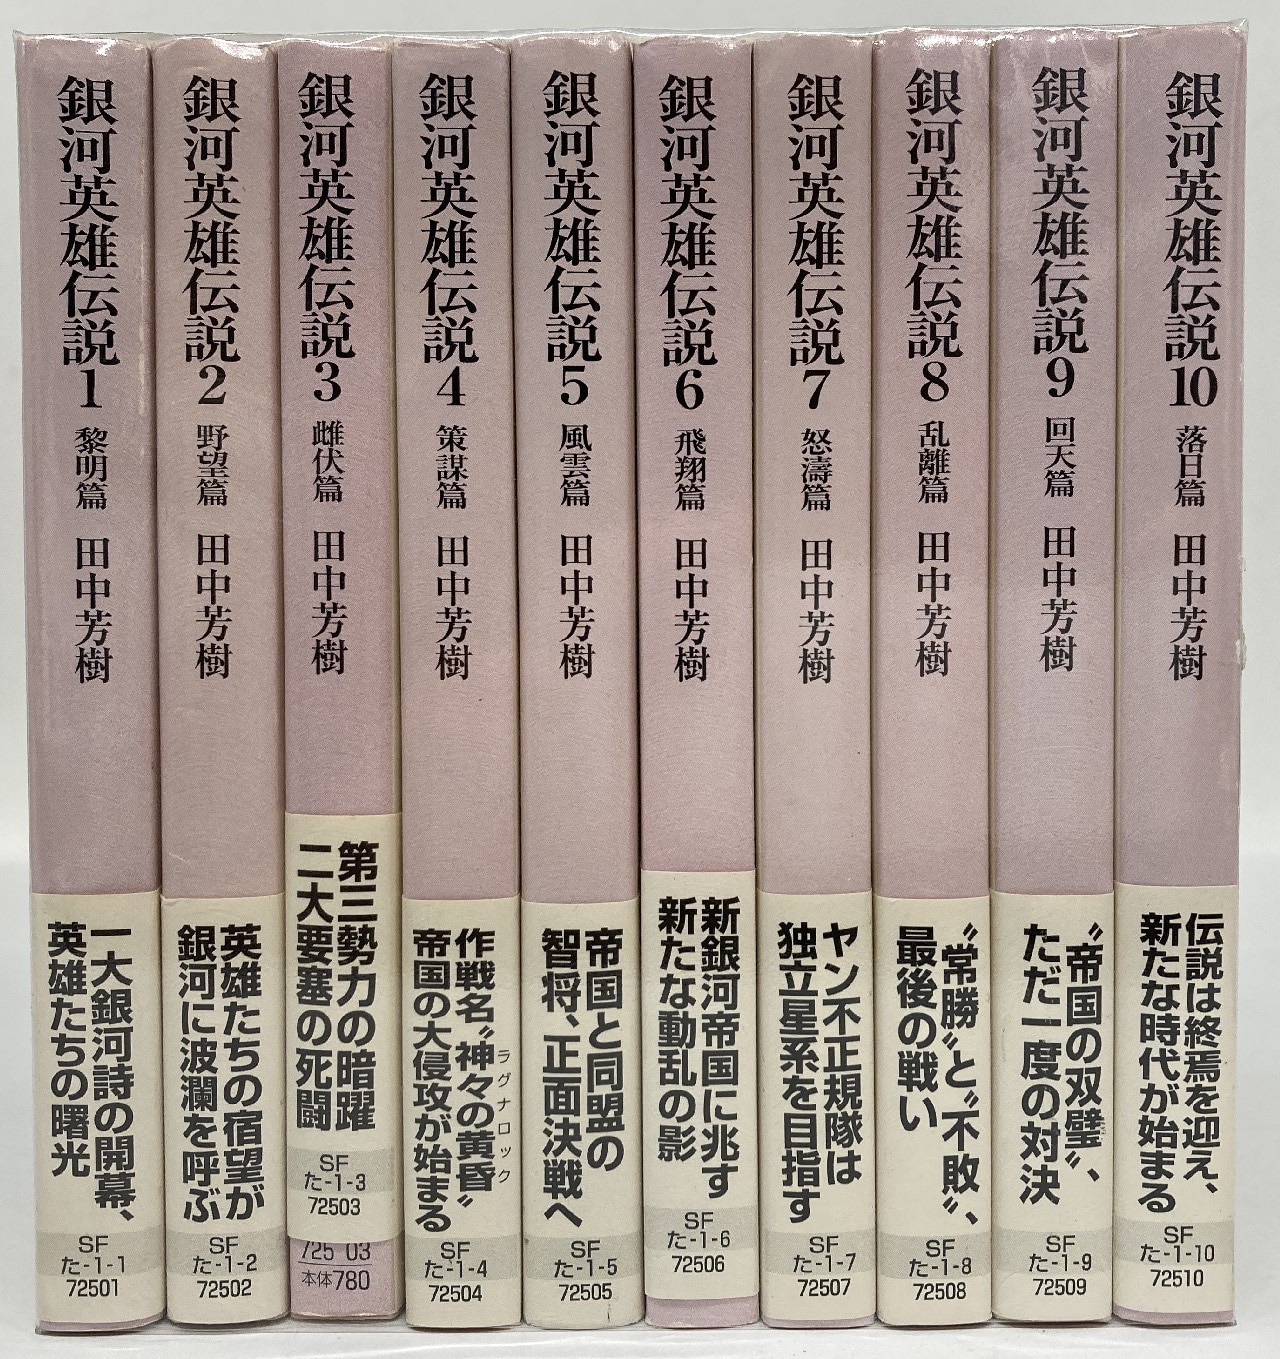 プレゼント対象商品 銀河英雄伝説 全10巻セット 小説 田中 芳樹 - 本